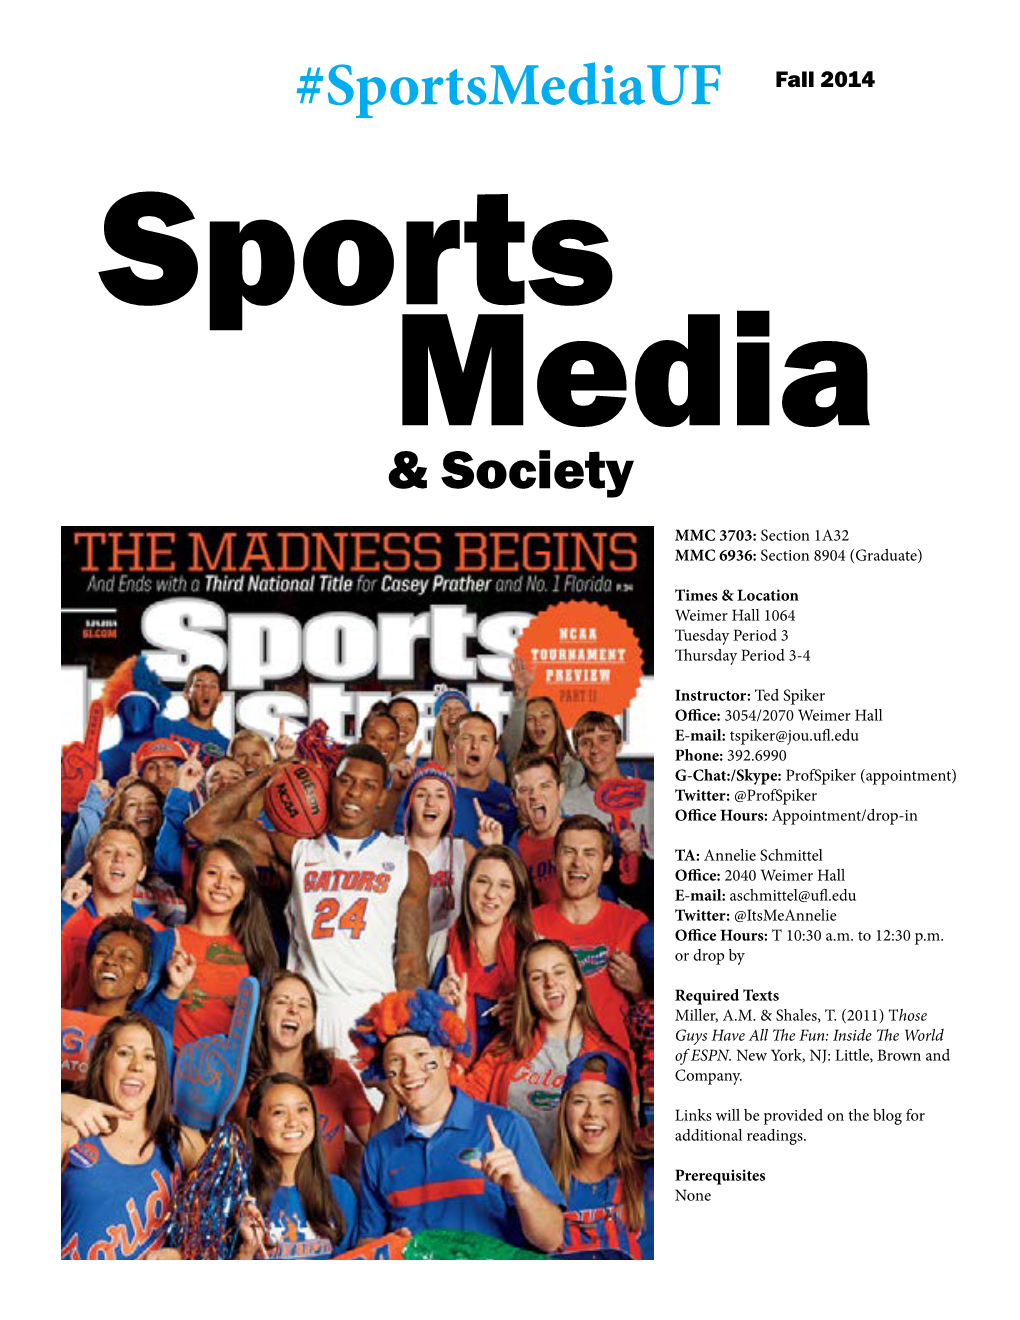 Sportsmediauf Fall 2014 Sports Media & Society